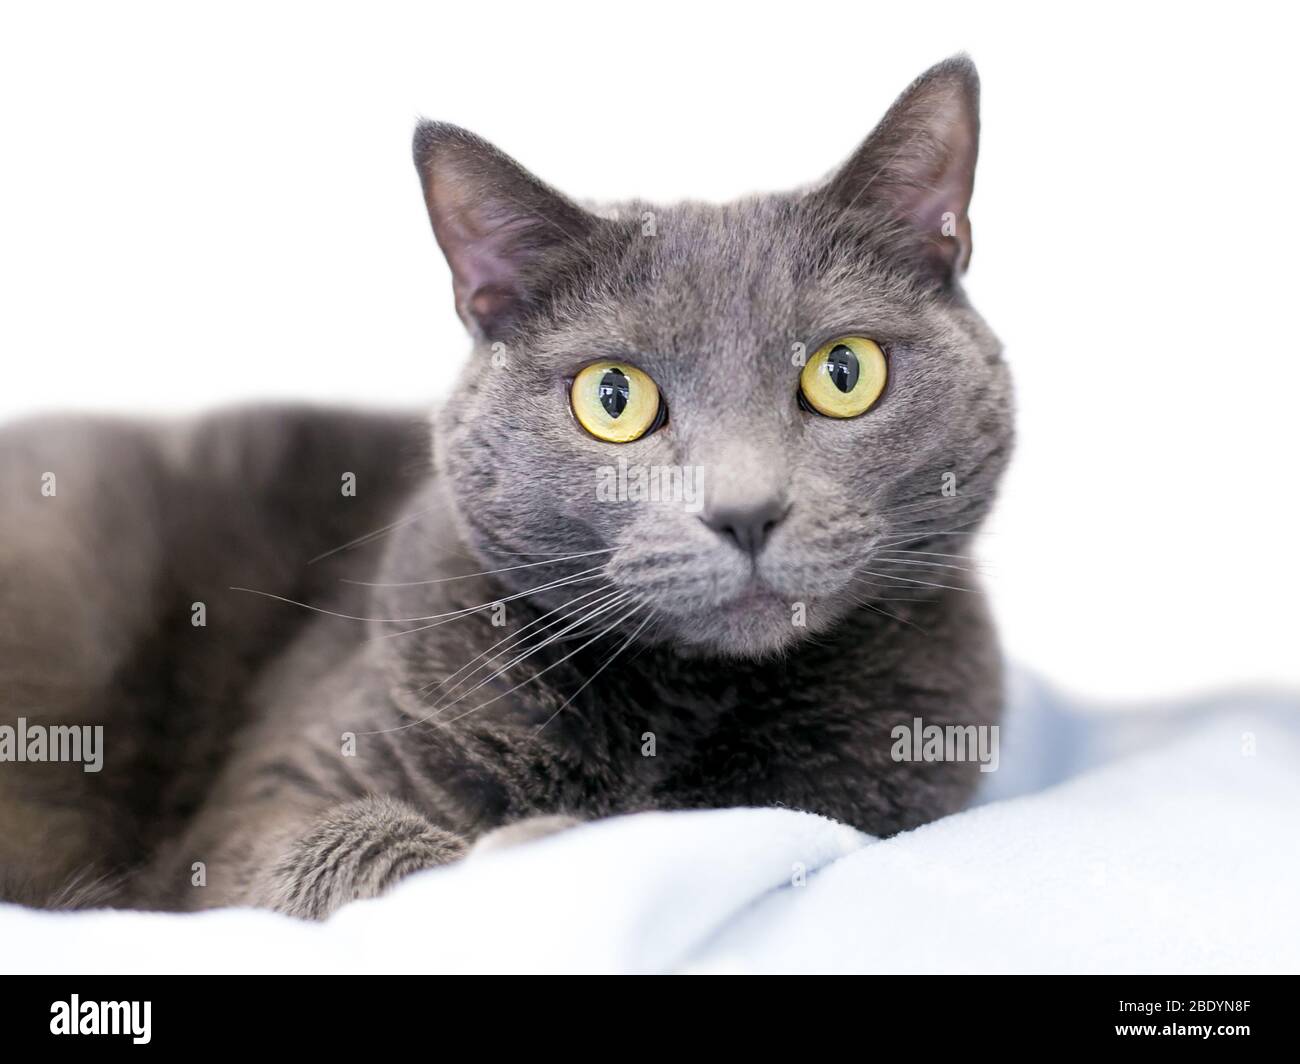 Un chat domestique gris à ciel court avec des yeux jaunes se reposant sur une couverture Banque D'Images